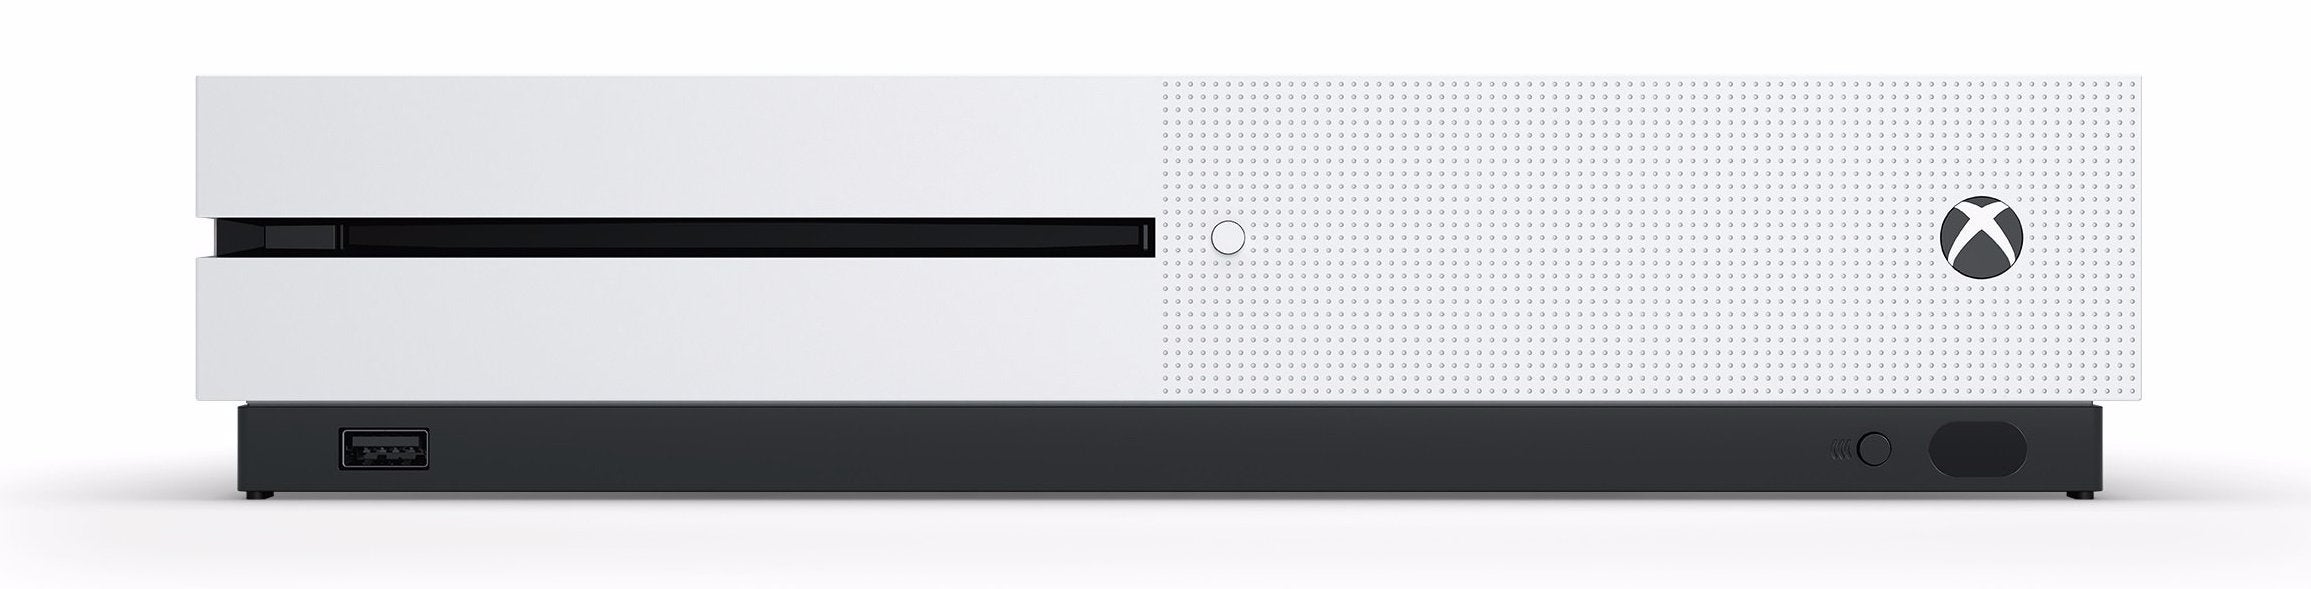 Immagine di Xbox One S: data di lancio, prezzo, specifiche e tutto ciò che sappiamo - articolo